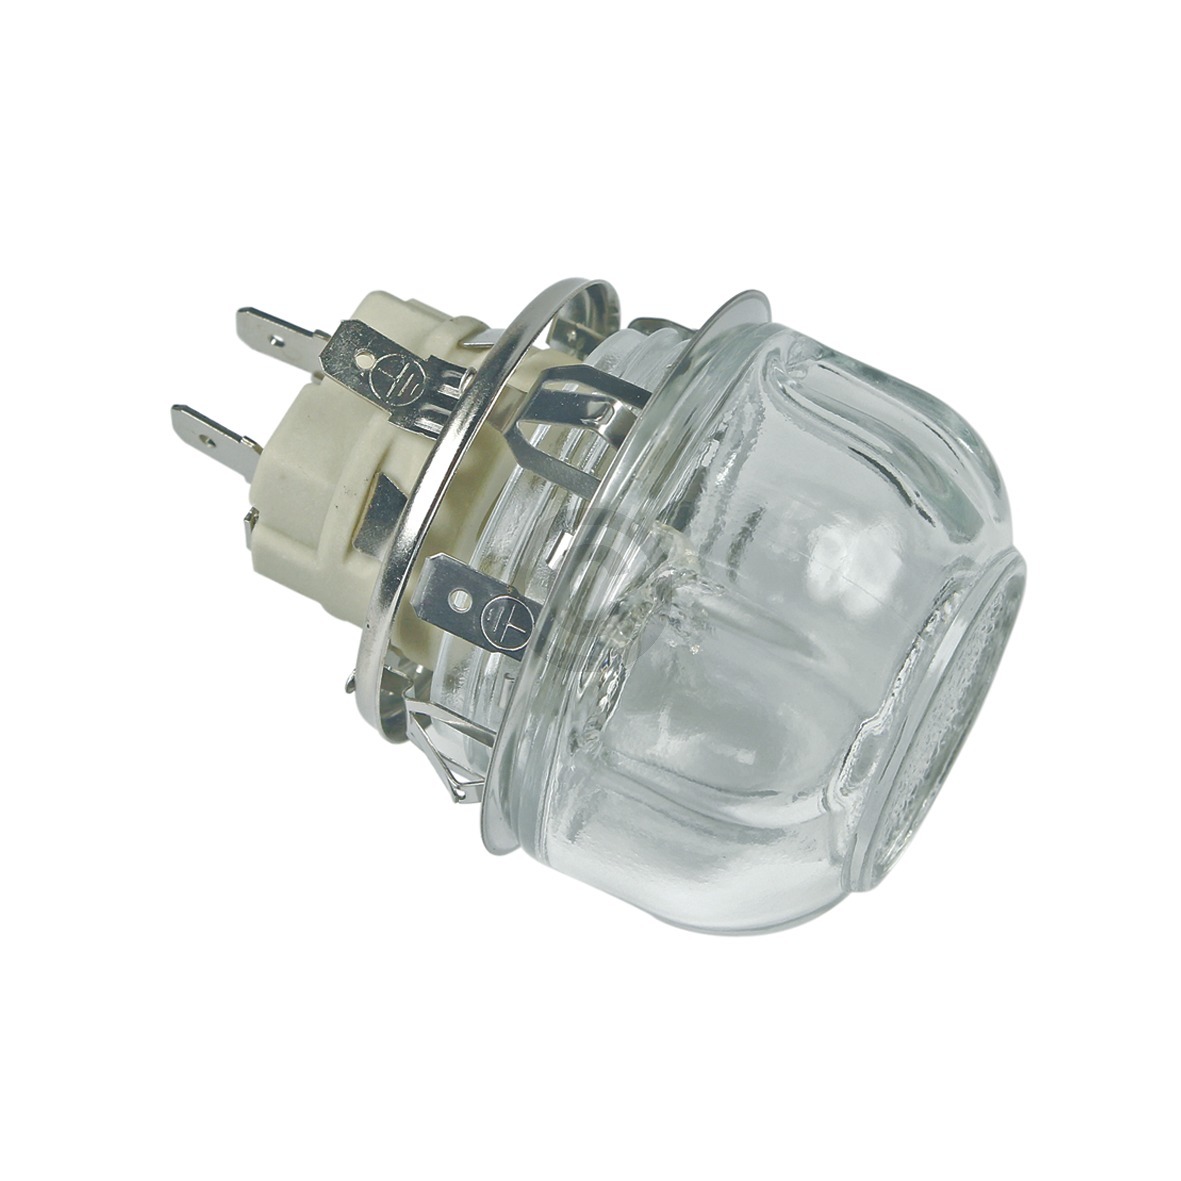 Lampeneinheit Electrolux 387937693/1 Fassung Lampe Glashaube für Backofen